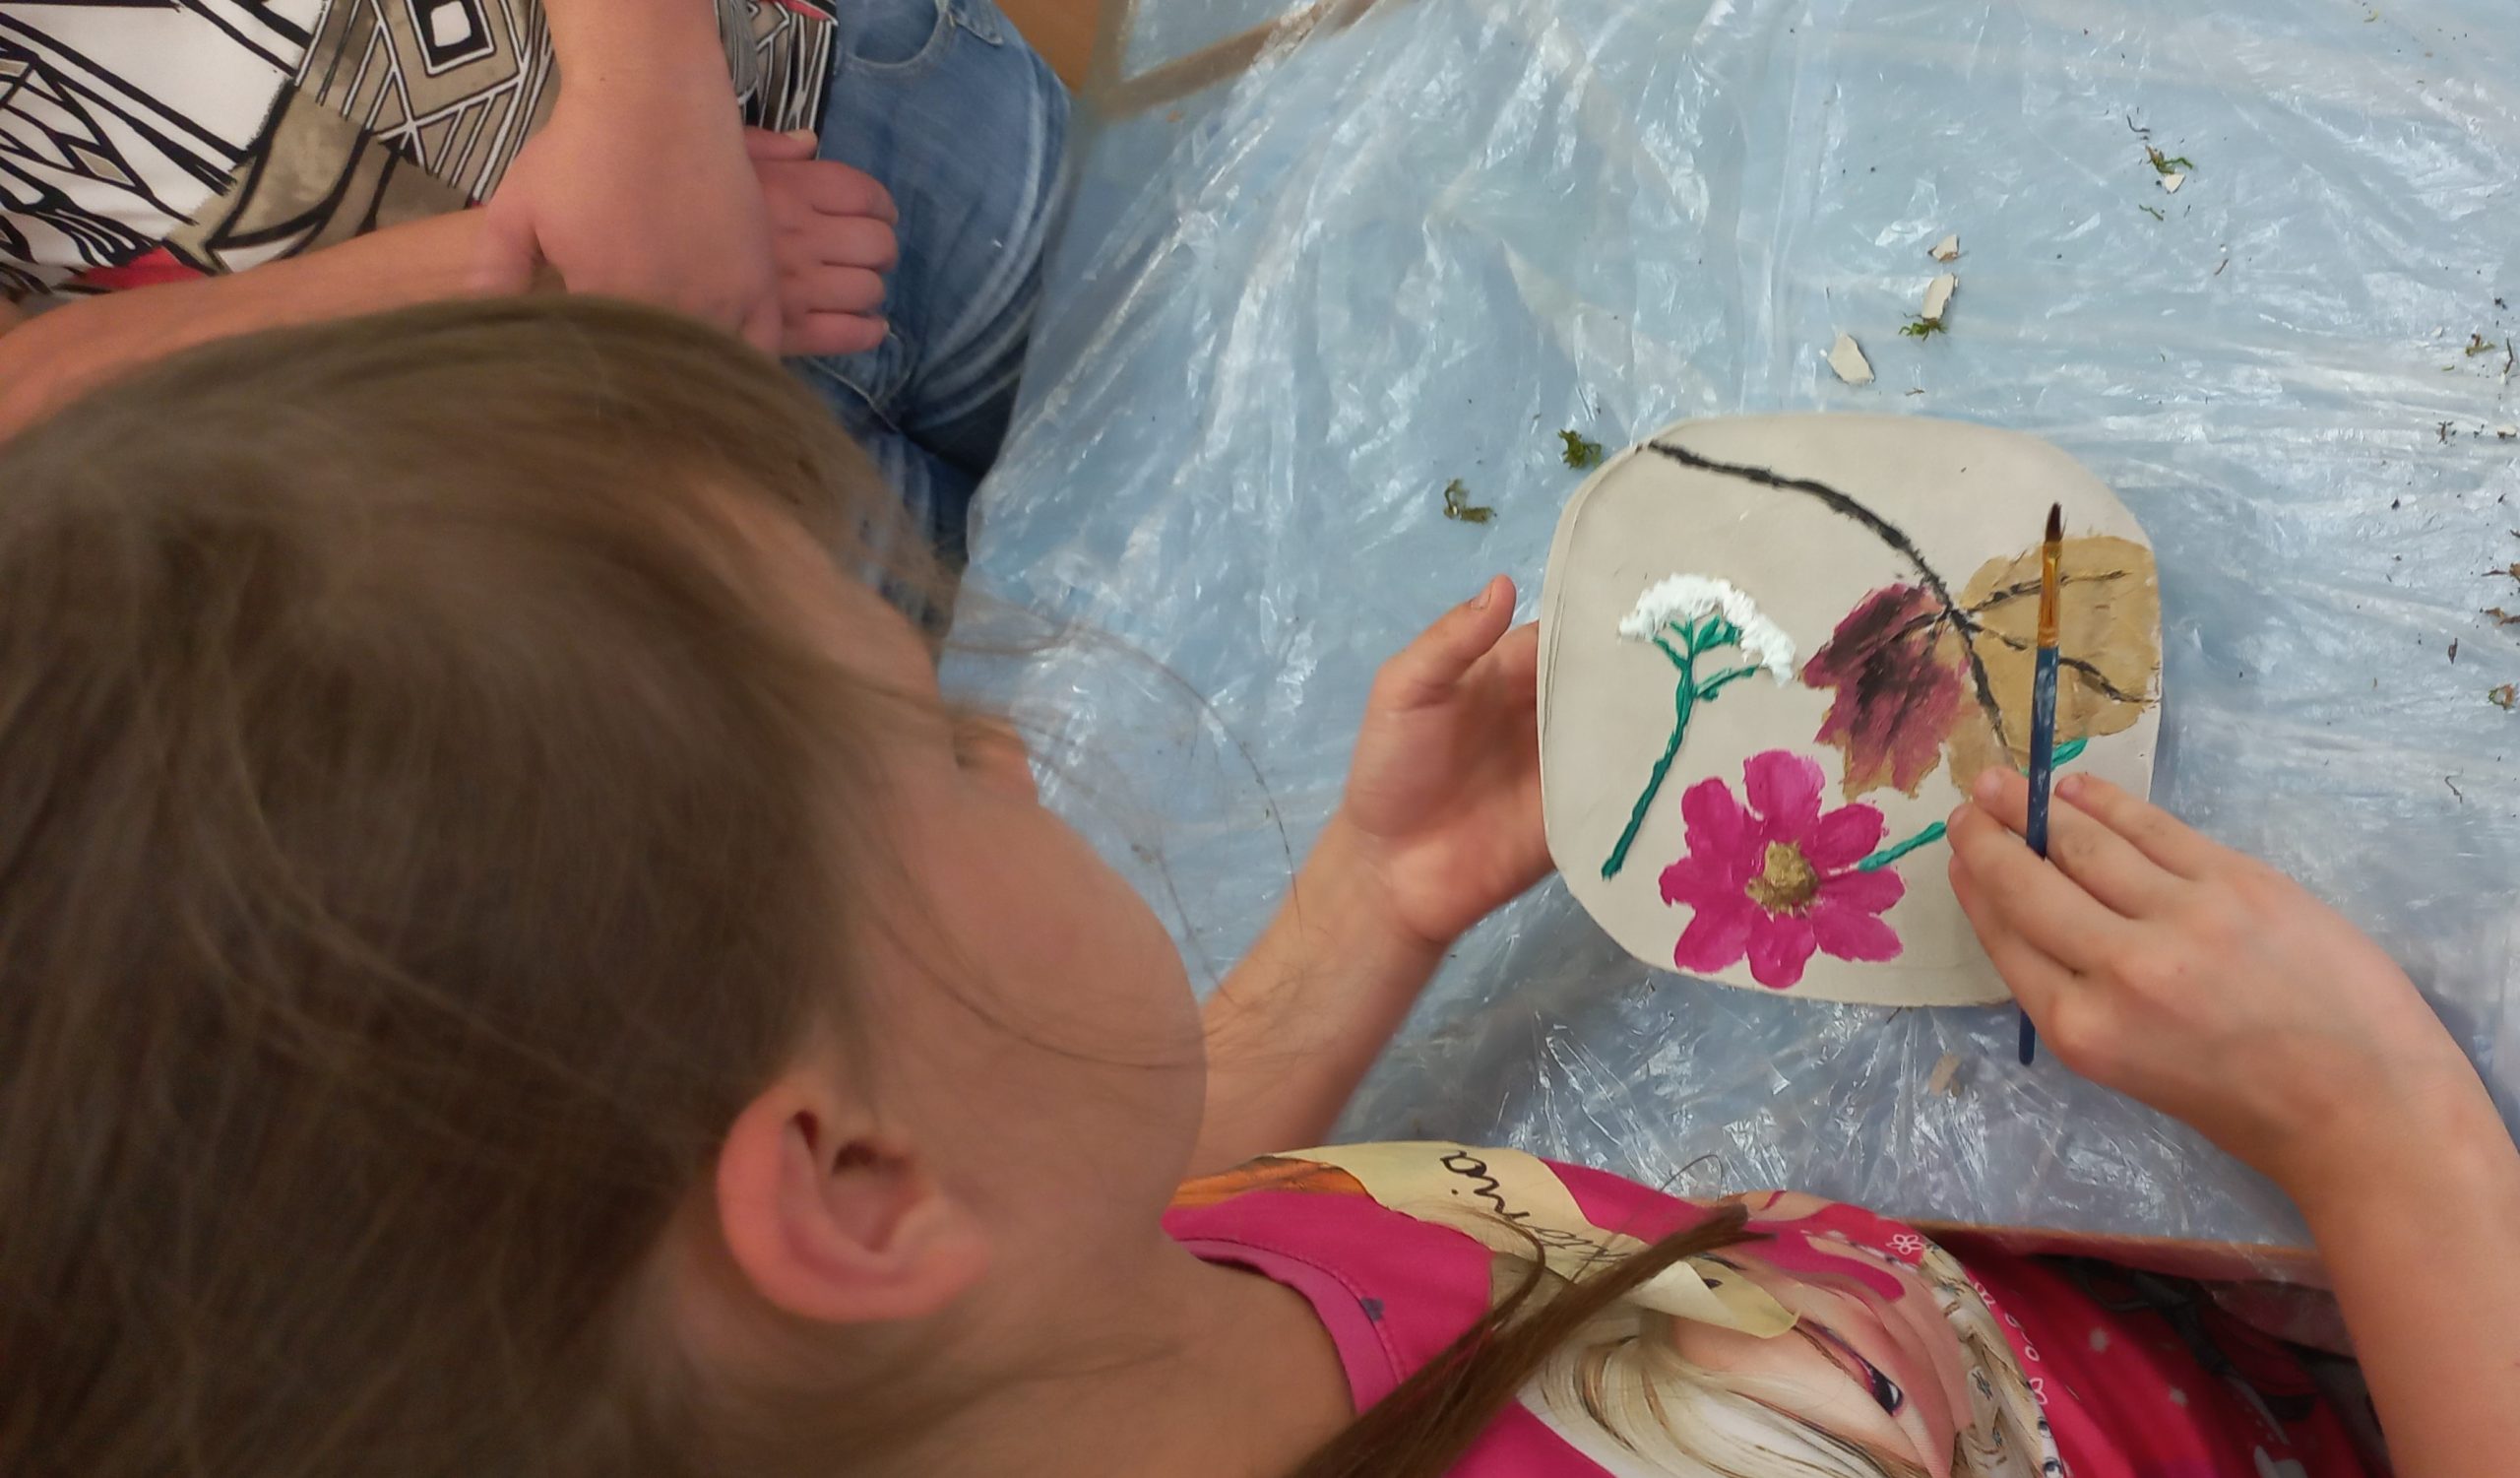 dziewczynka maluje gliniany obrazek na którym odbiła kwiatki